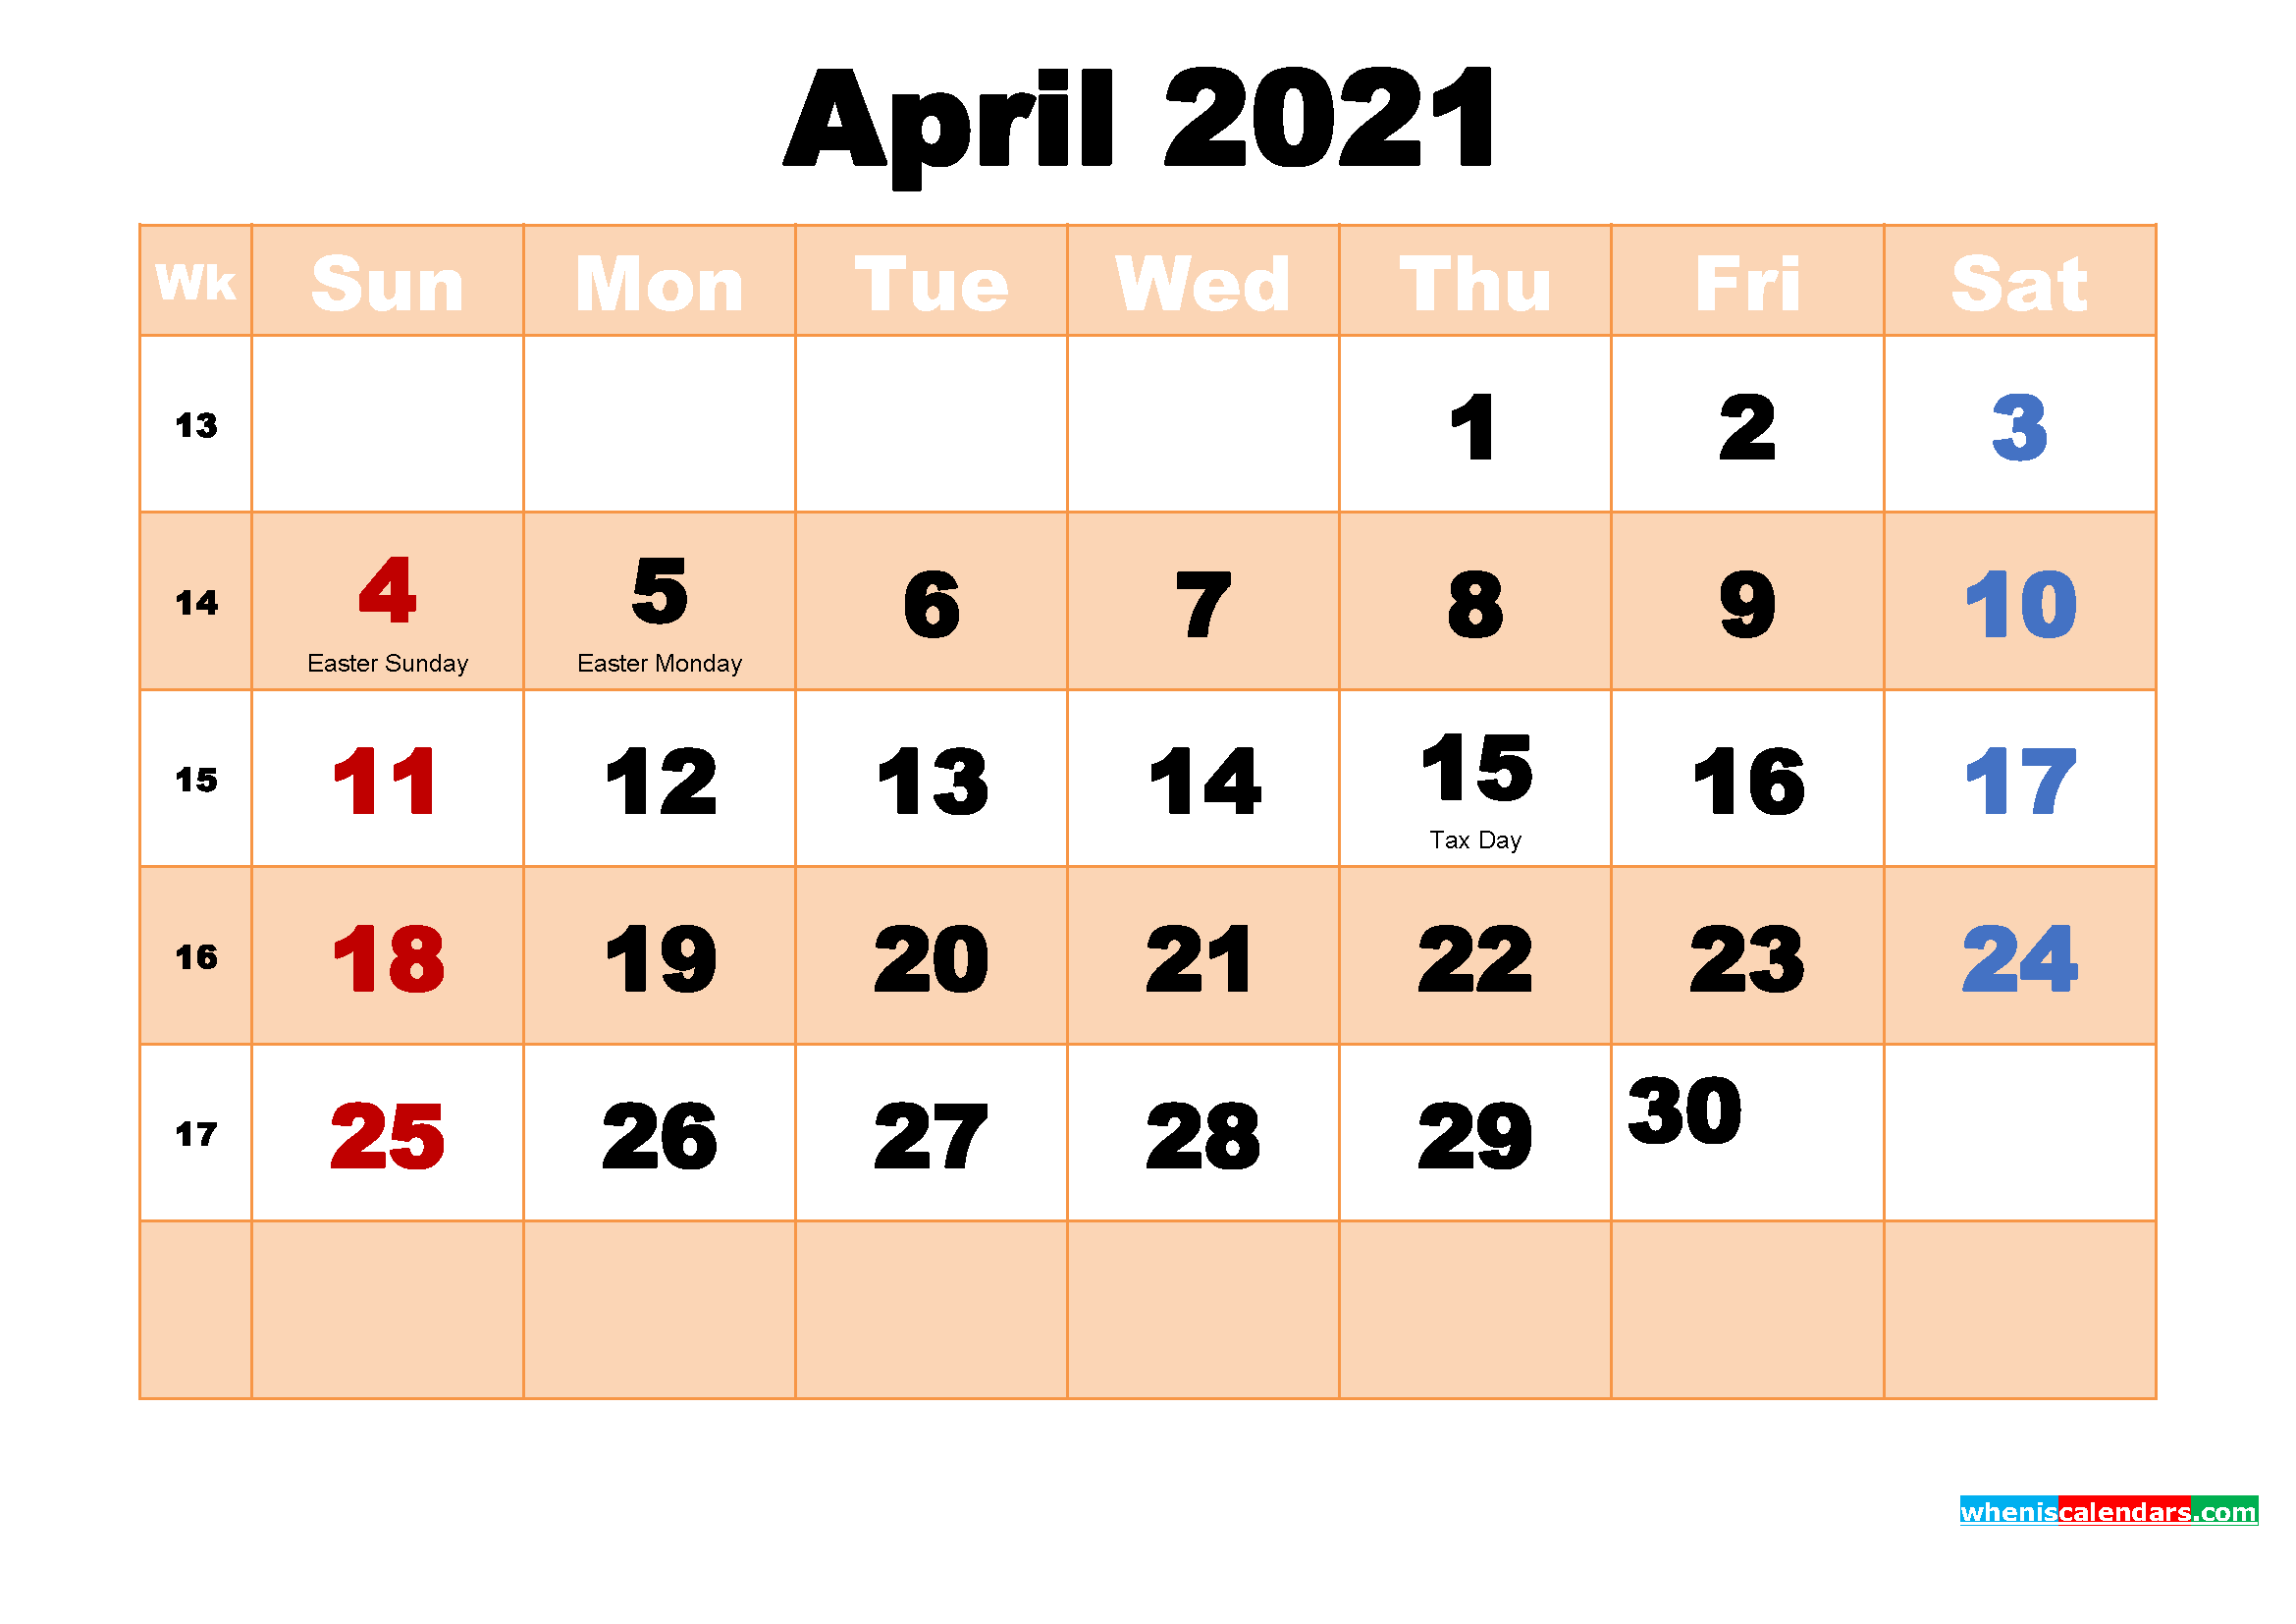 bcpss calendar 2021 22 Calendar 2021 March And April Calendar On Twitter 2021 March April Calendar United bcpss calendar 2021 22